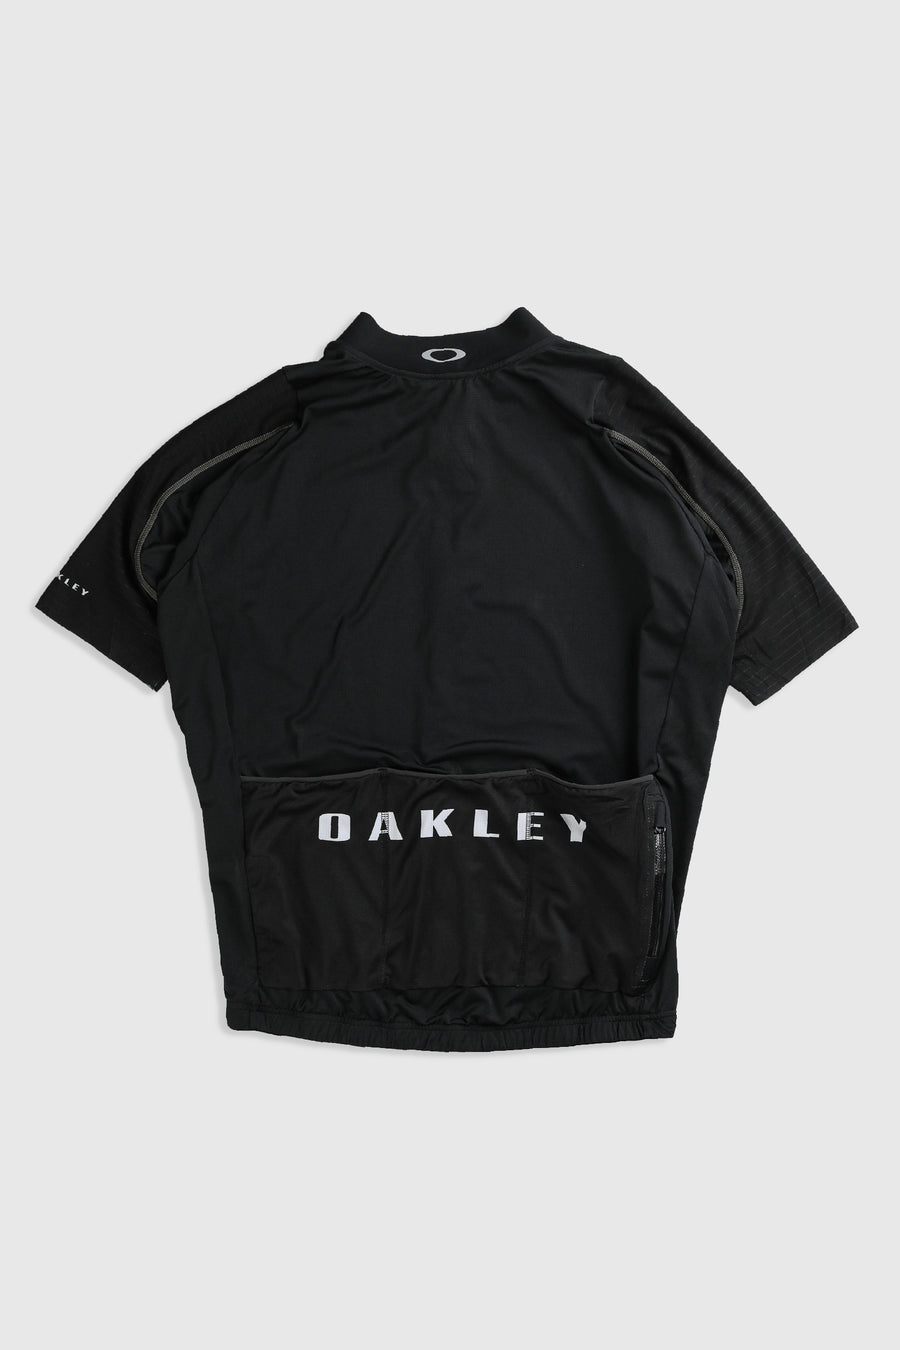 Oakley Cycling Jersey